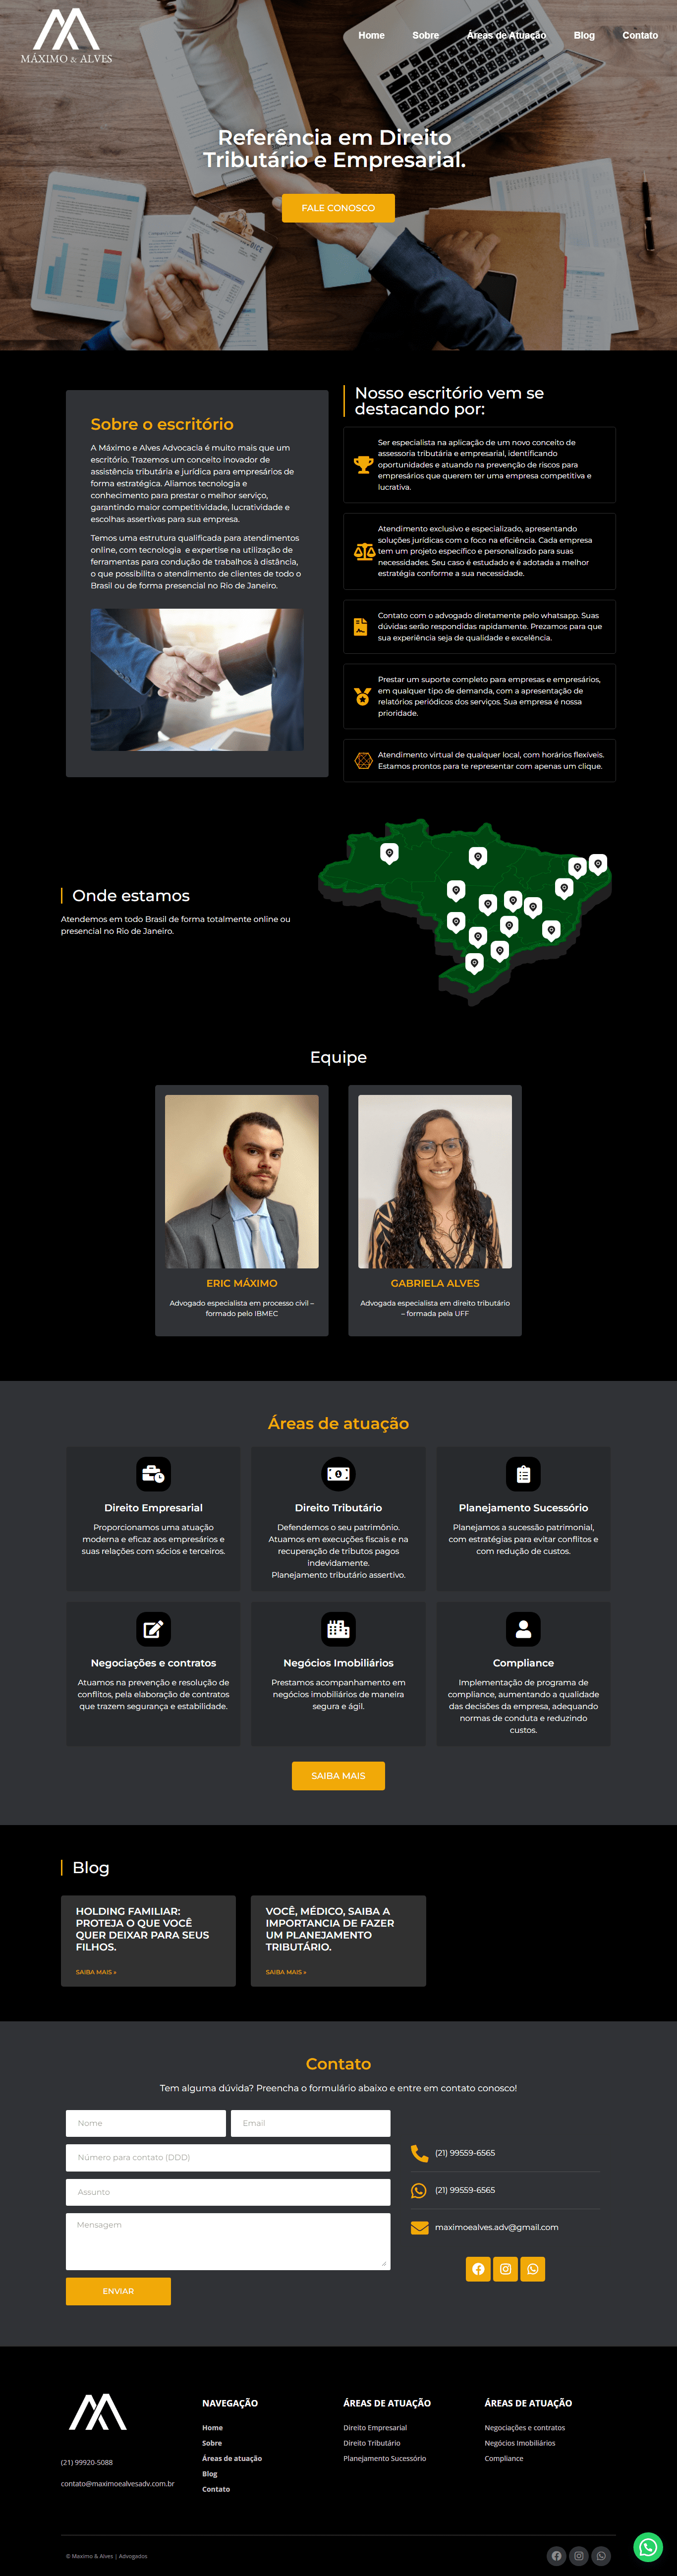 Site Institucional de advogado (Maximo & Alves)